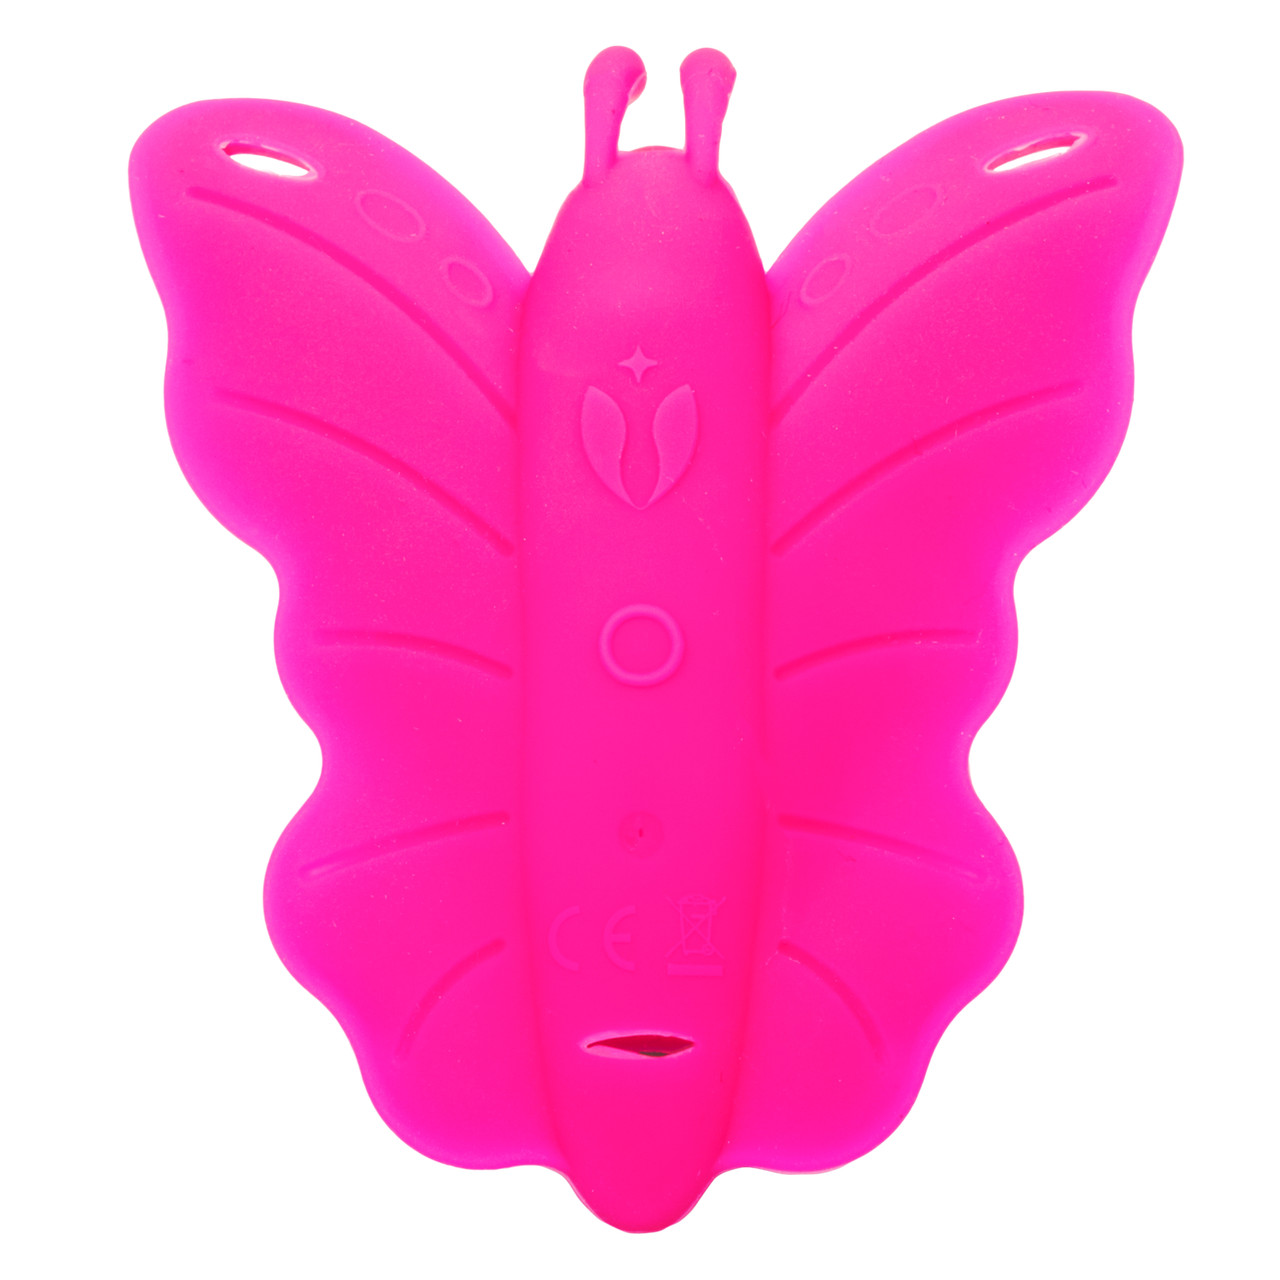 Вибротрусики с пультом ДУ CalExotics Venus Butterfly Venus Penis, розовые